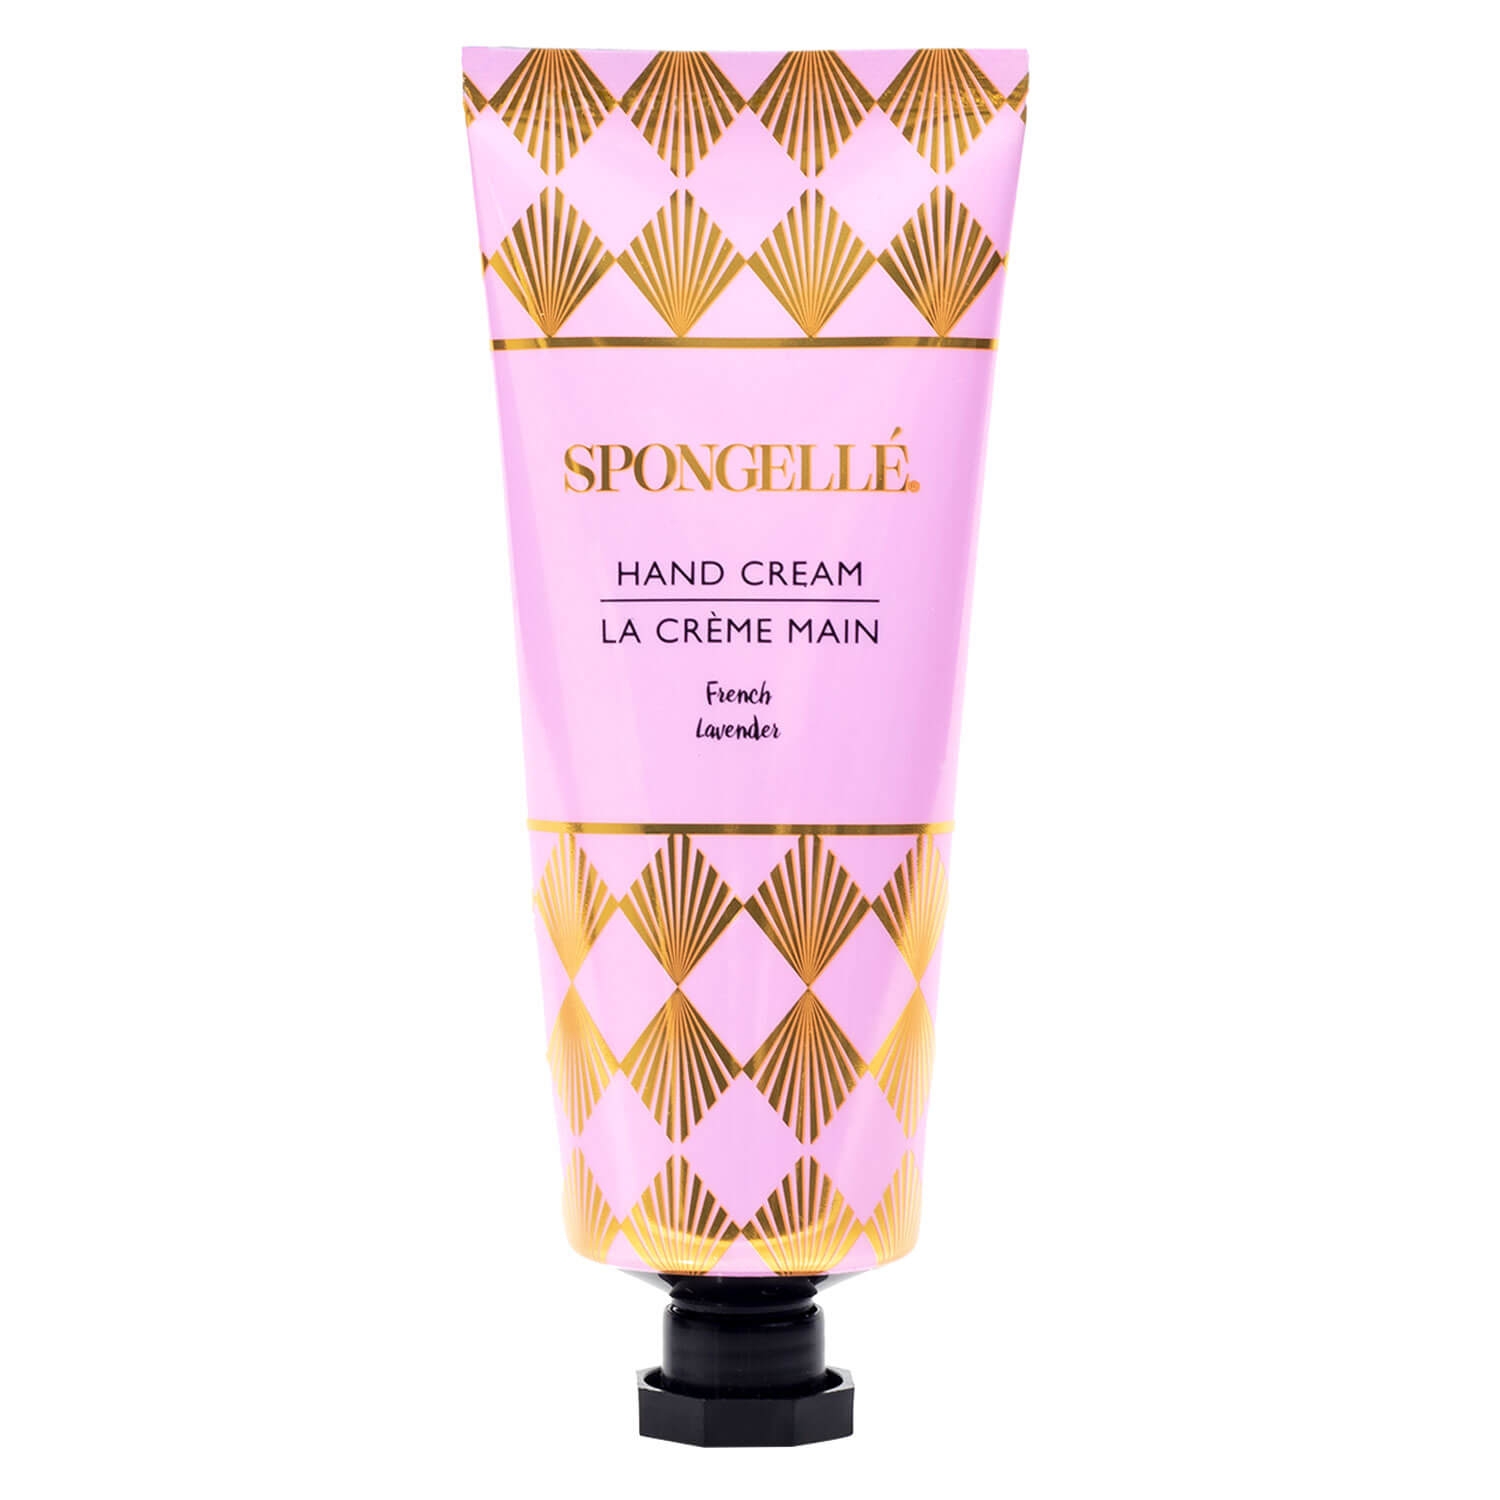 Produktbild von SPONGELLÉ Hand Cream - French Lavender